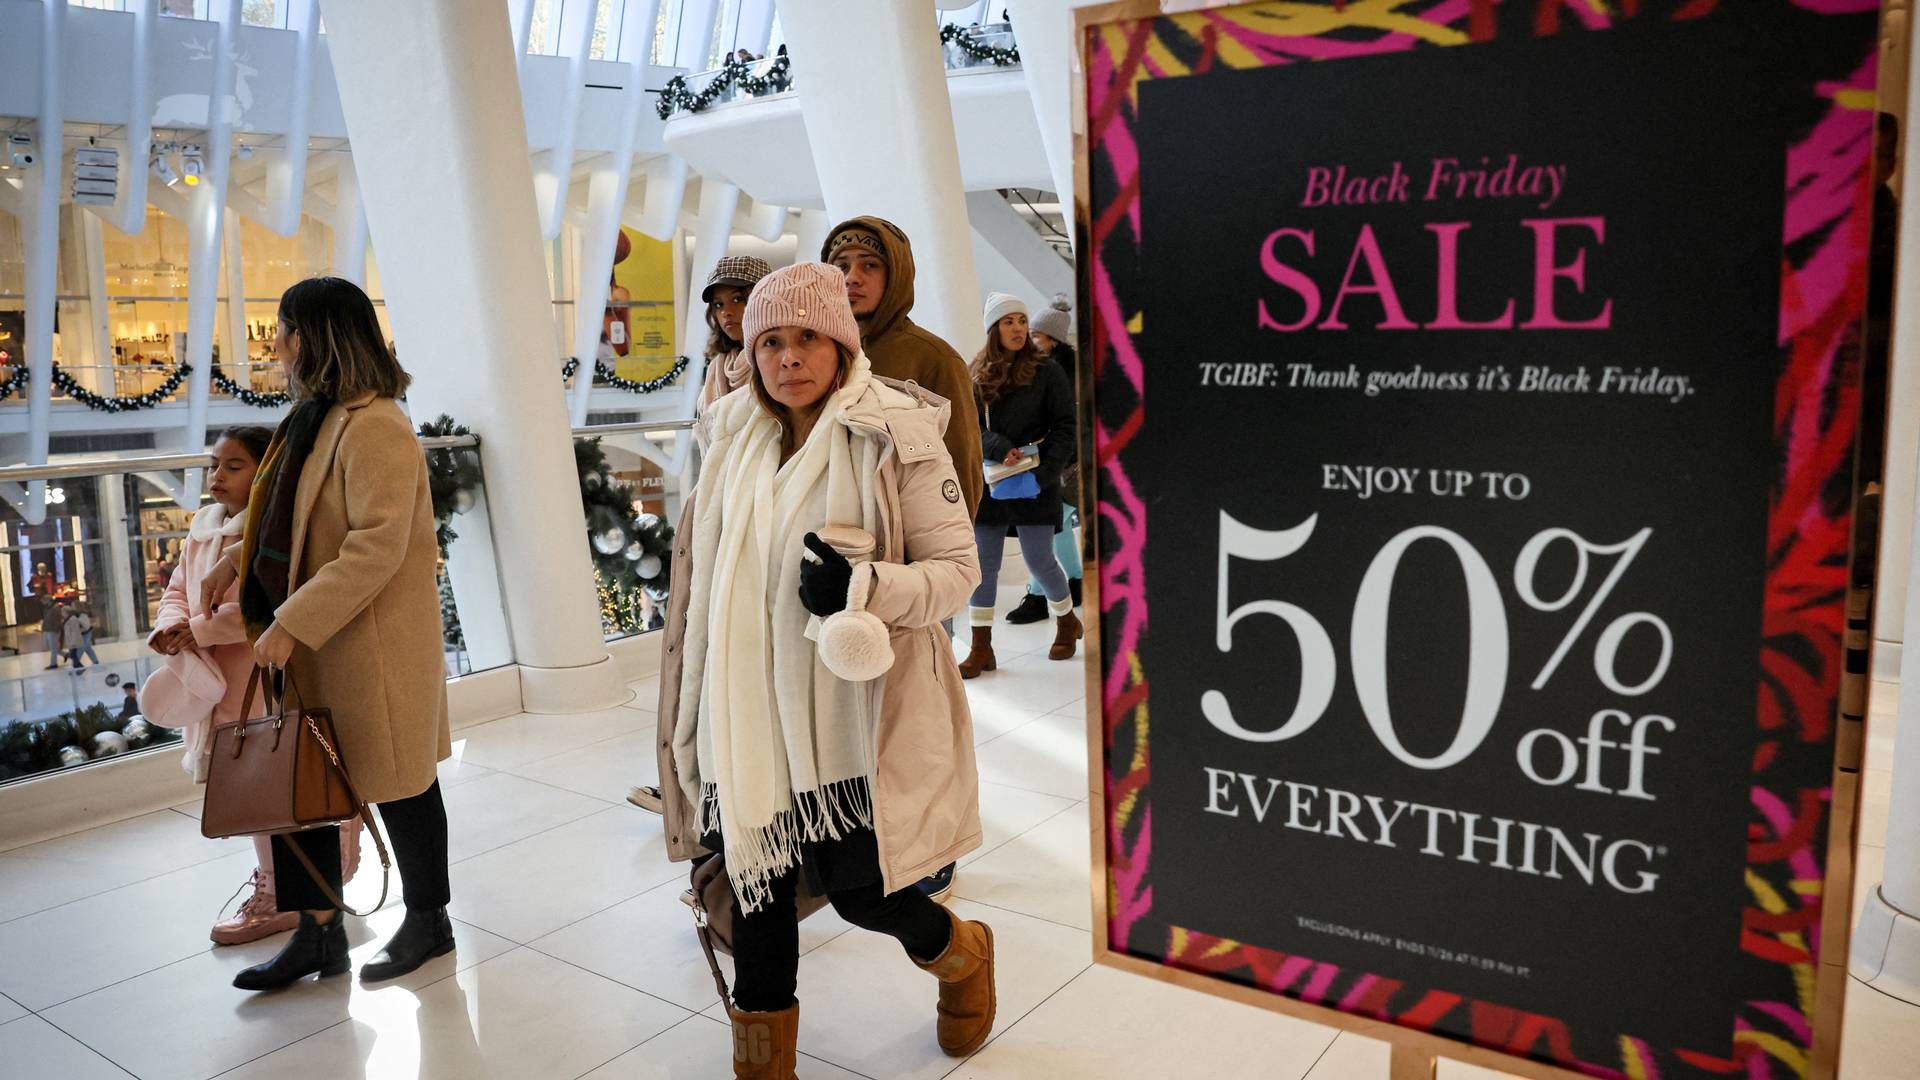 Analytikere vurderer, at den 23. december blev en større handelsdag end black friday. | Foto: Brendan Mcdermid